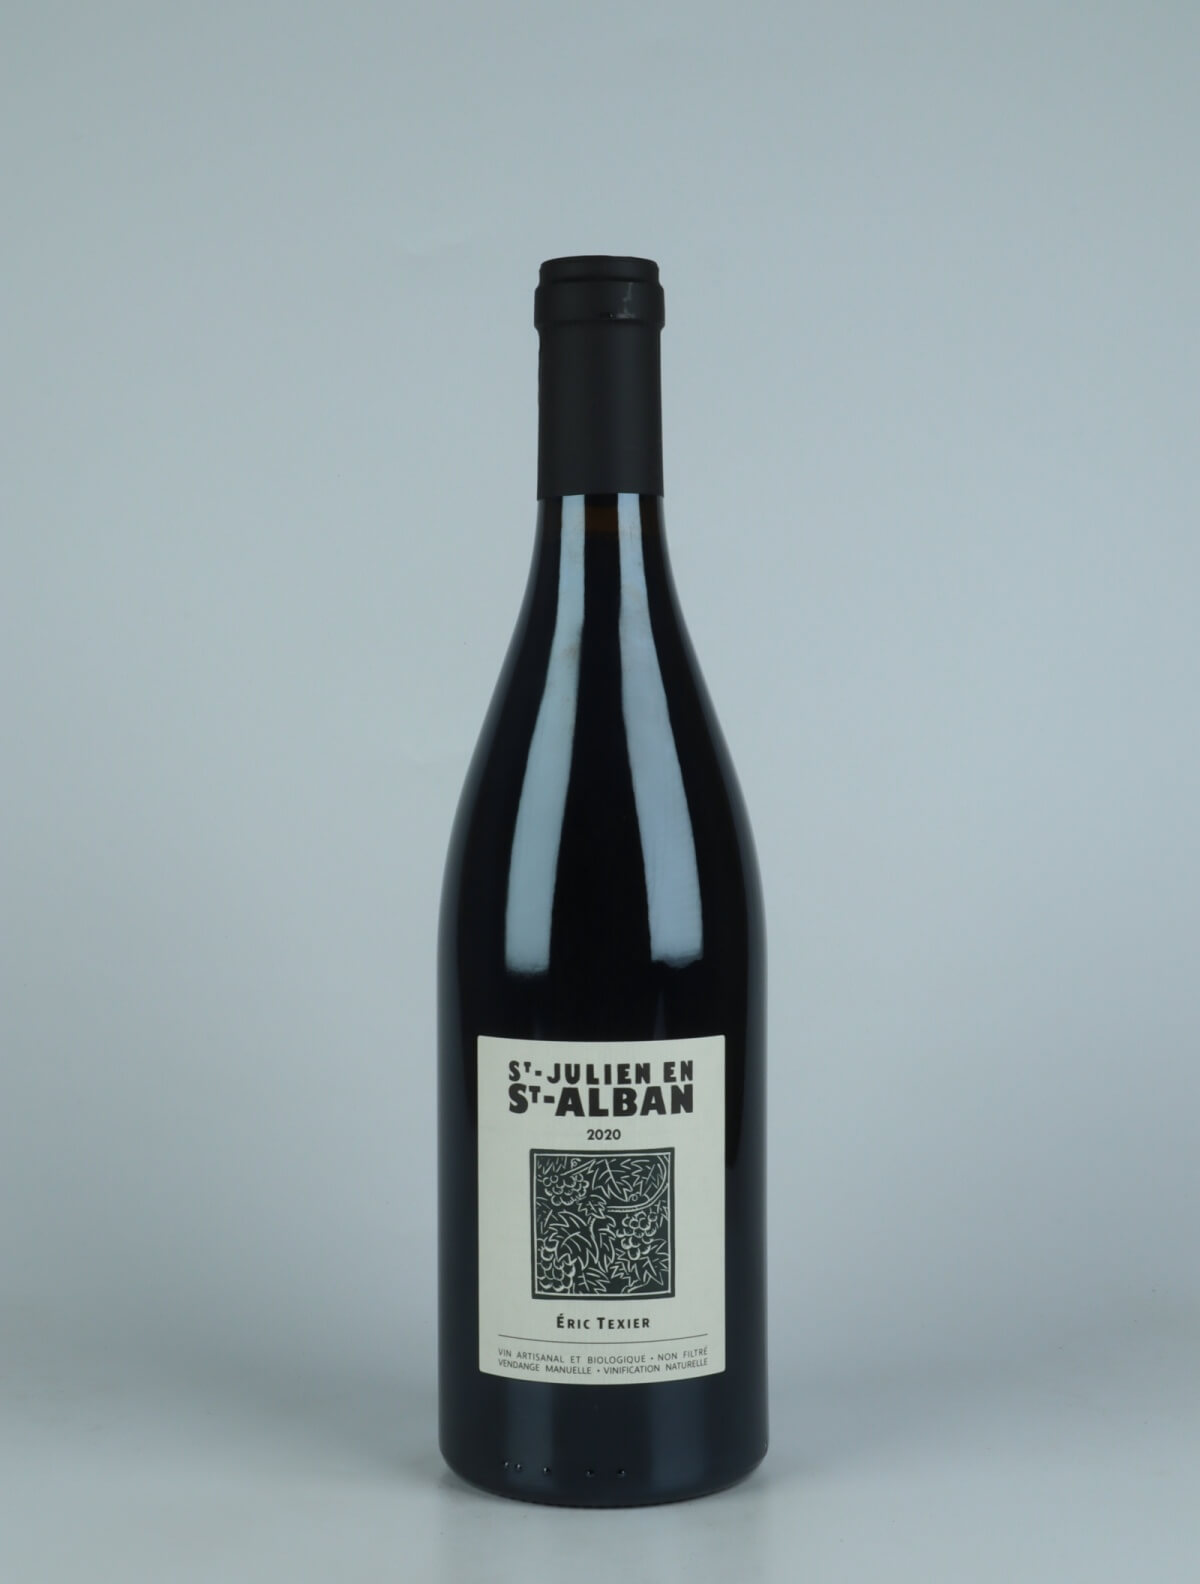 A bottle 2020 St Julien en St Alban Red wine from Eric Texier, Rhône in France